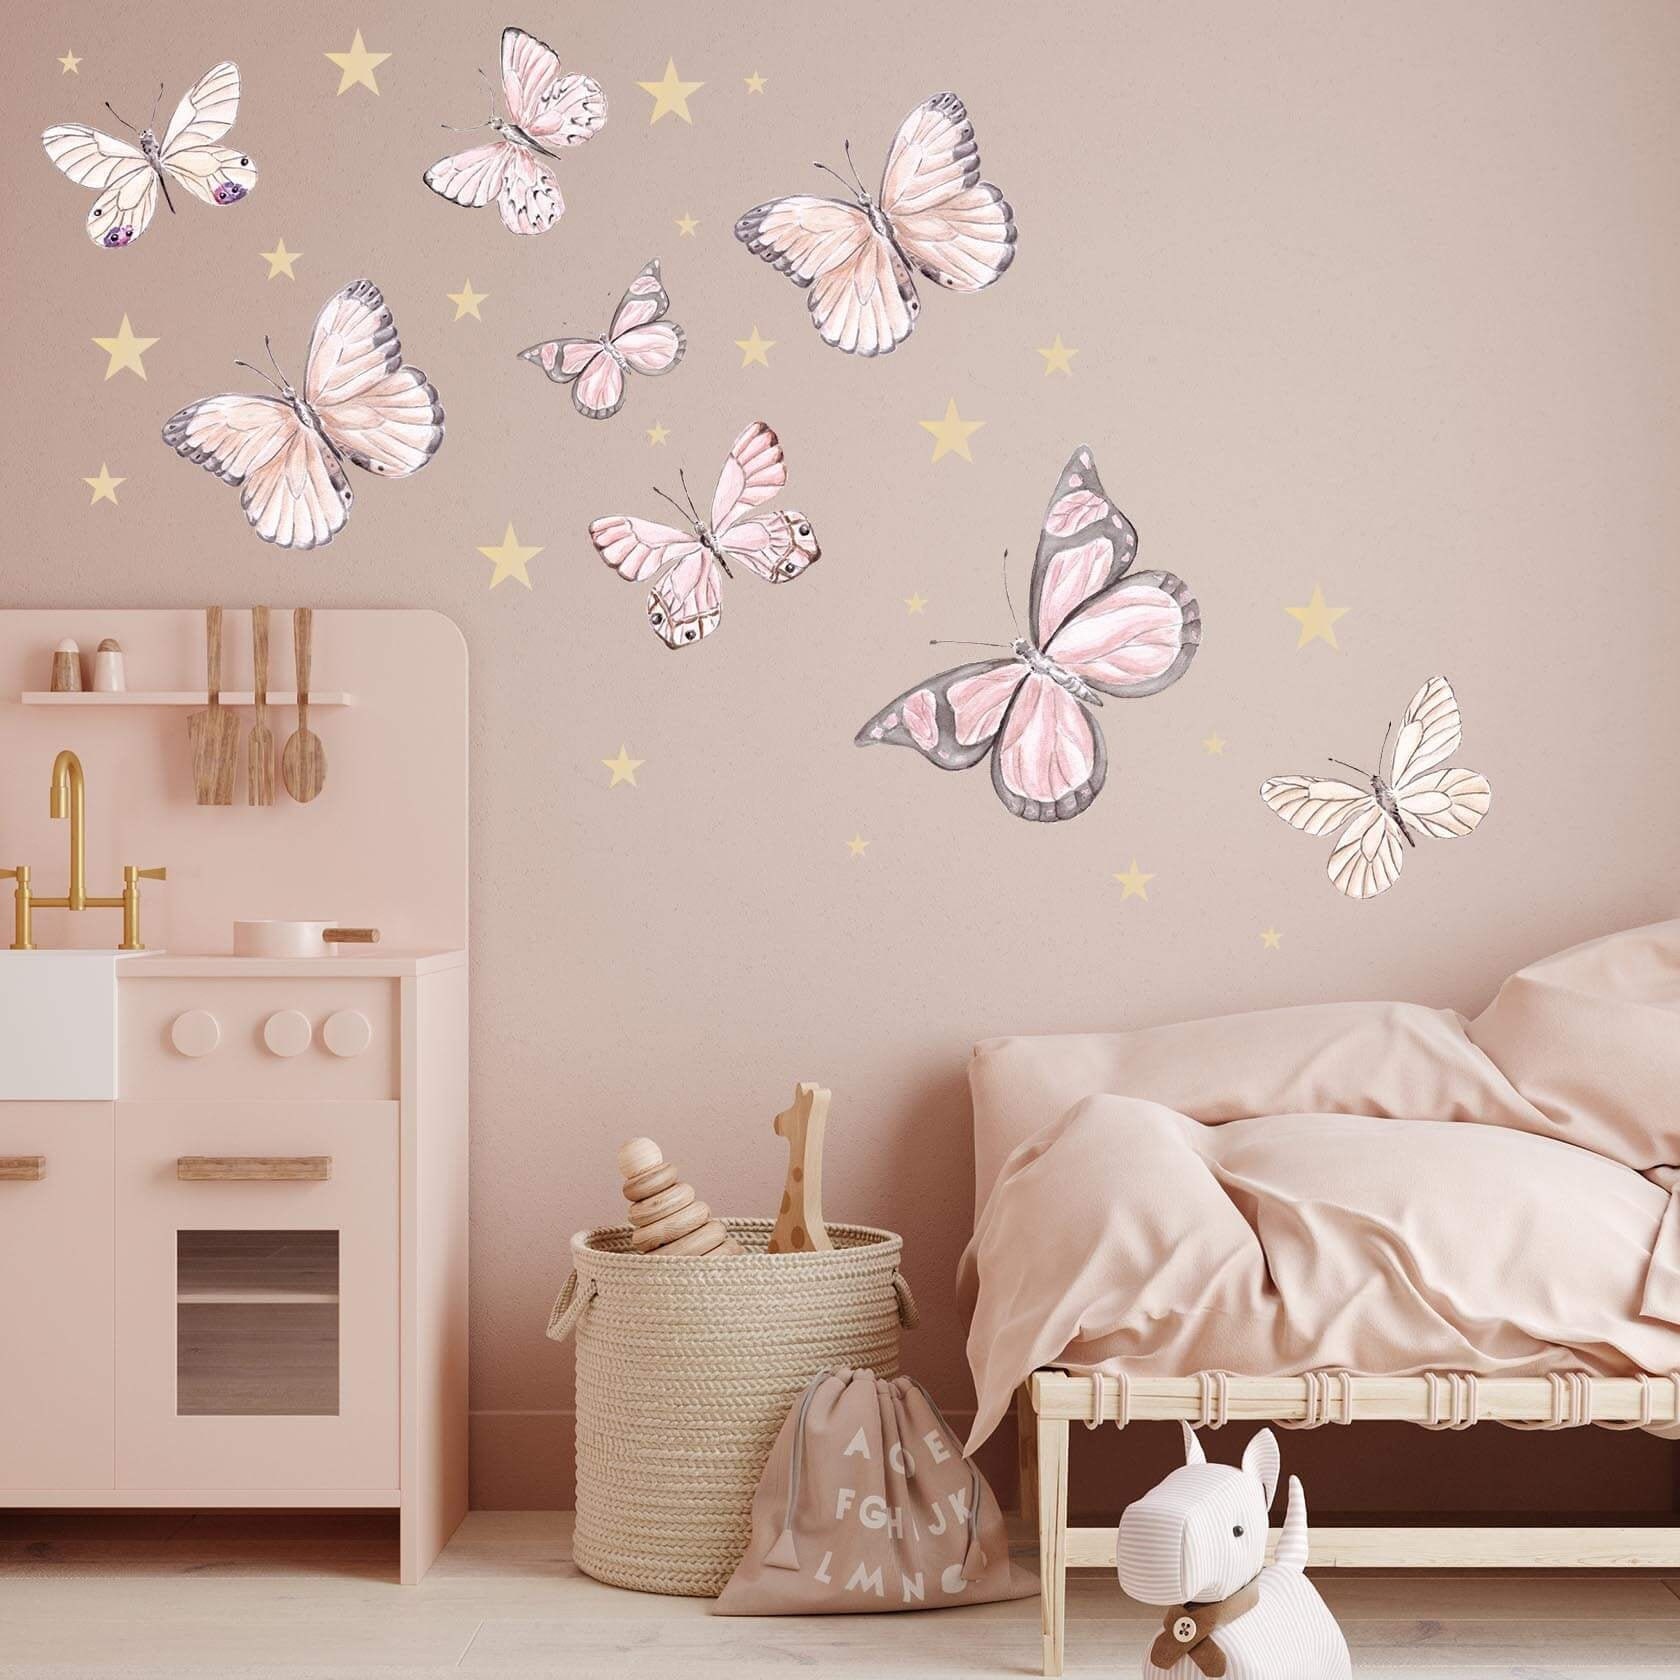 Vinyl Schmetterling Wand Schmetterlinge, BILDER, Schmetterling Pink Blau  Profil, Deko Zimmer, Aufkleber Zimmer, Dekoration, Vinyl, Billig  kostengünstiger